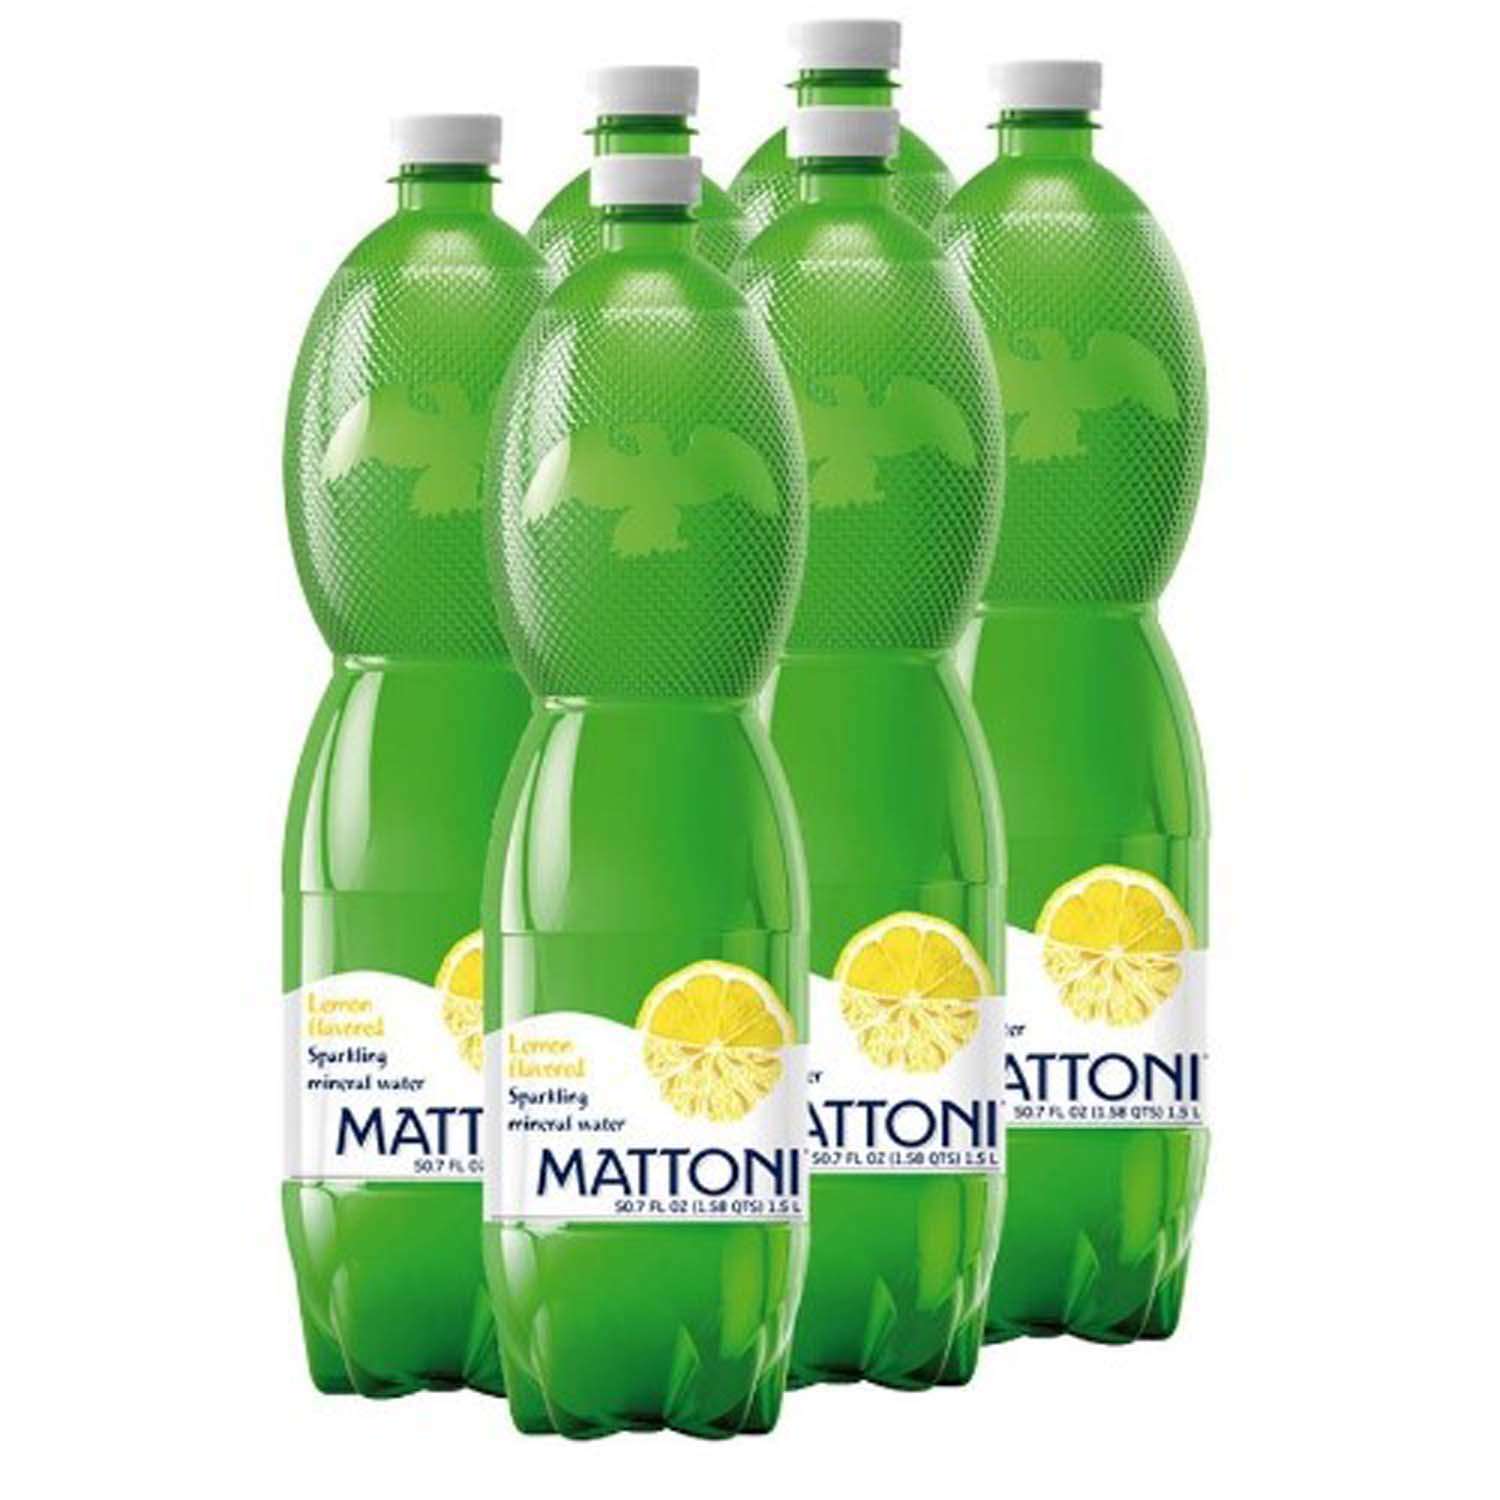 Вода минеральная Mattoni со вкусом лимона 1.5 л 6 шт - фото 1